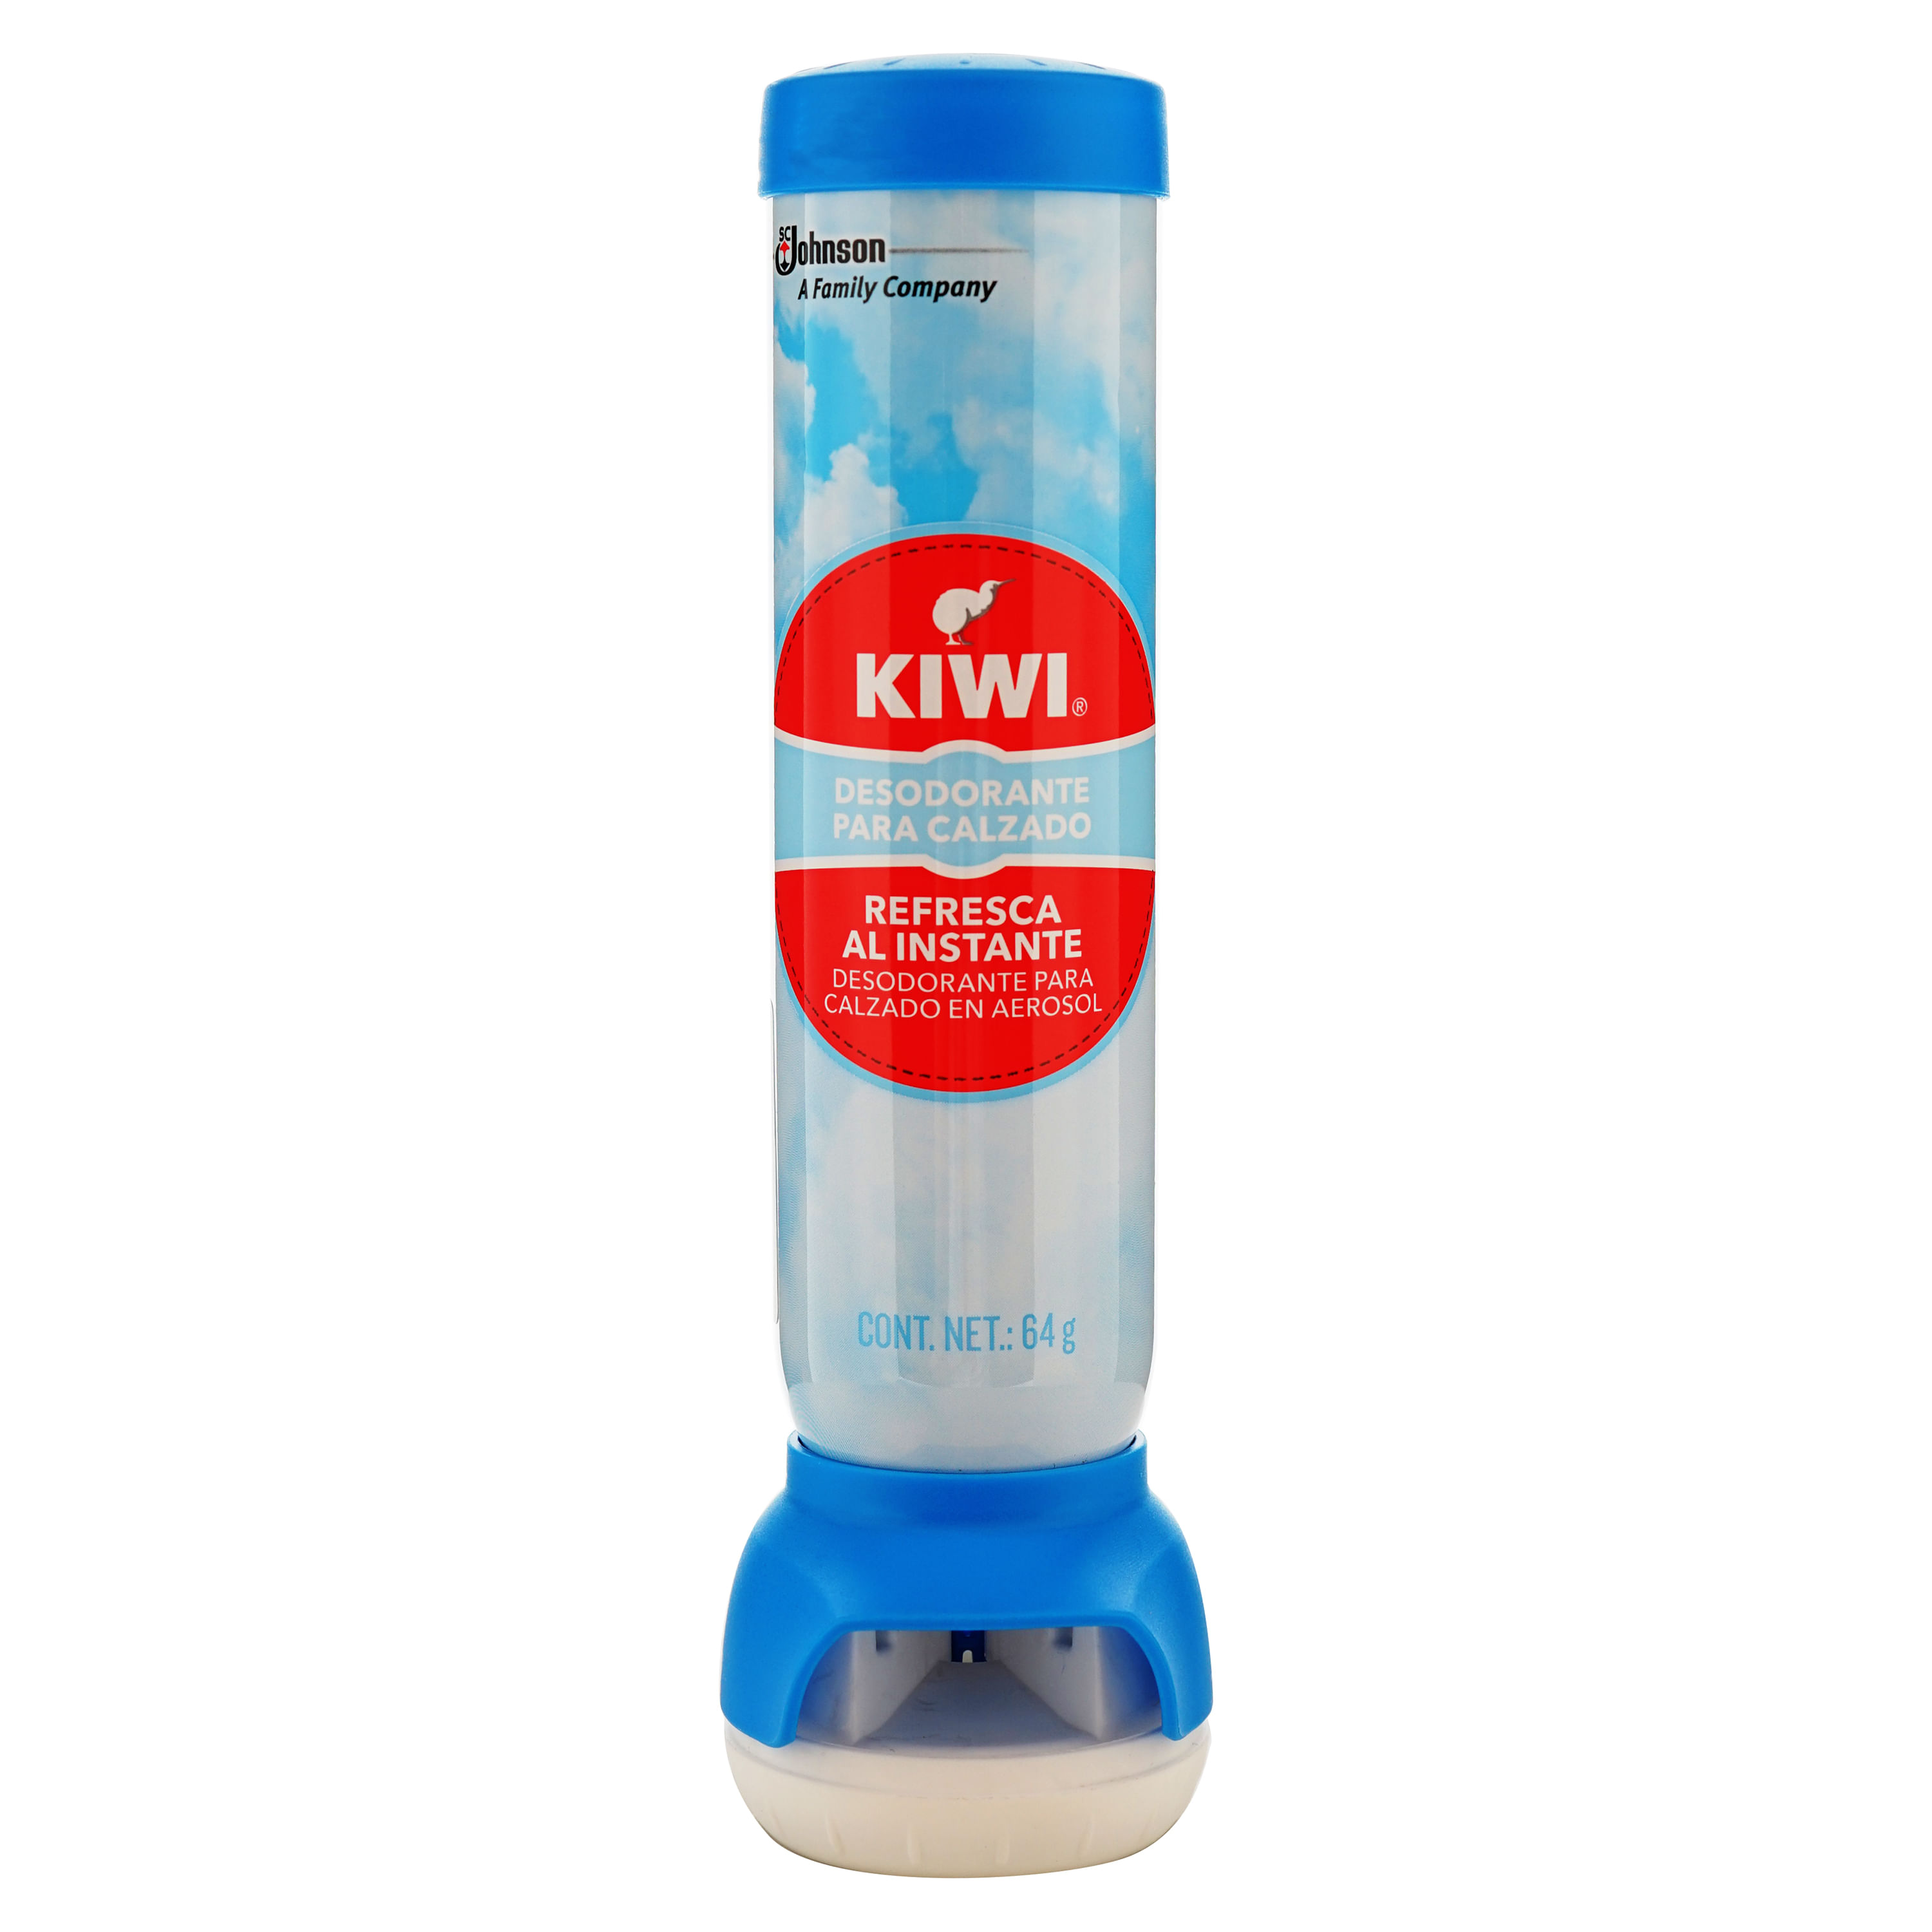 KIWI® Desodorante para calzado